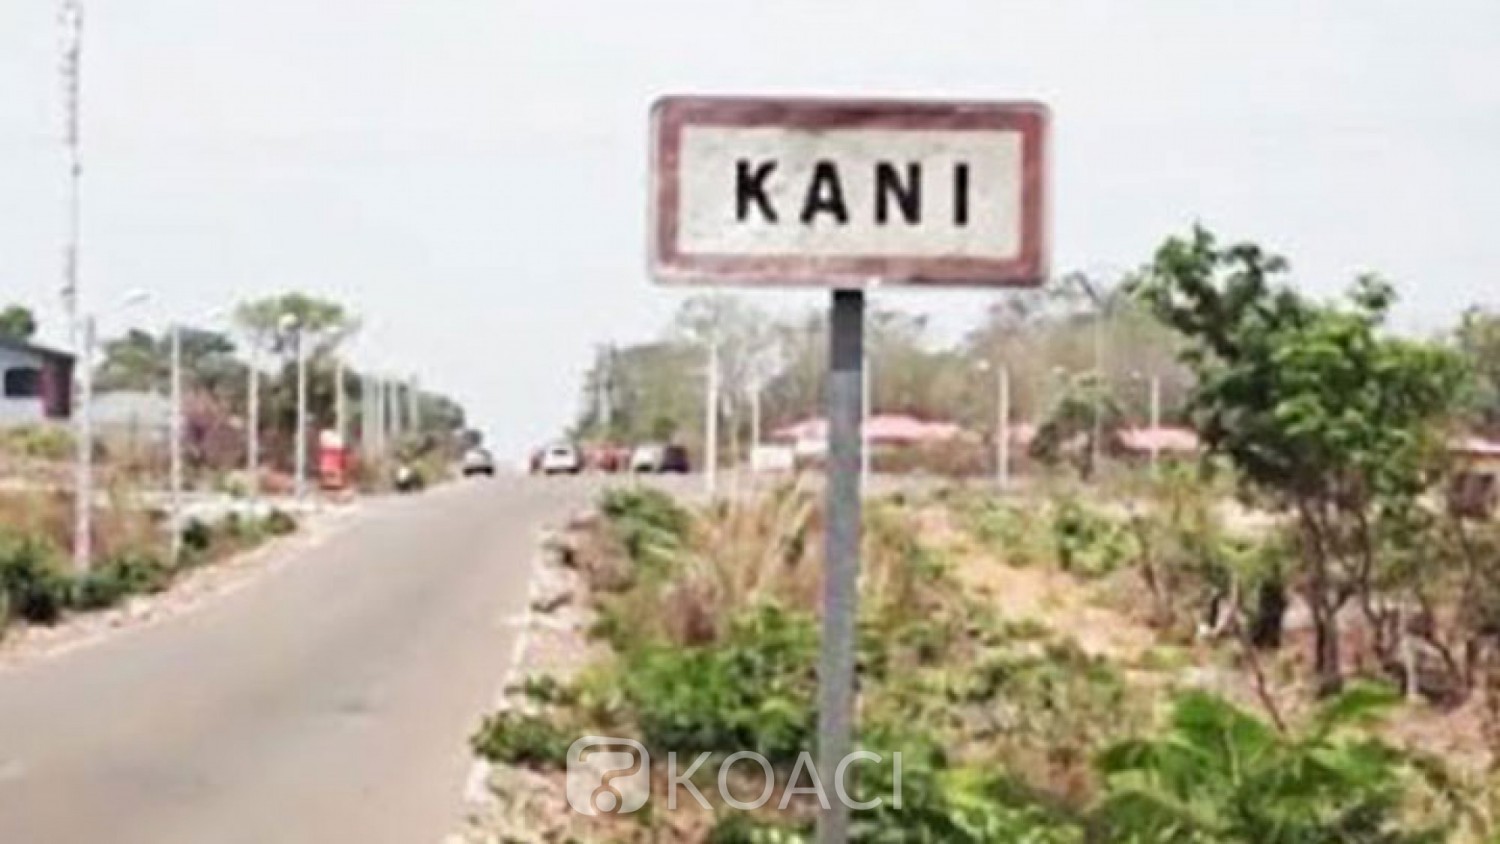 Côte d'Ivoire : À Kani, ils essaient d'arnaquer une dame et sont arrêtés alors qu'ils s'y attendaient le moins